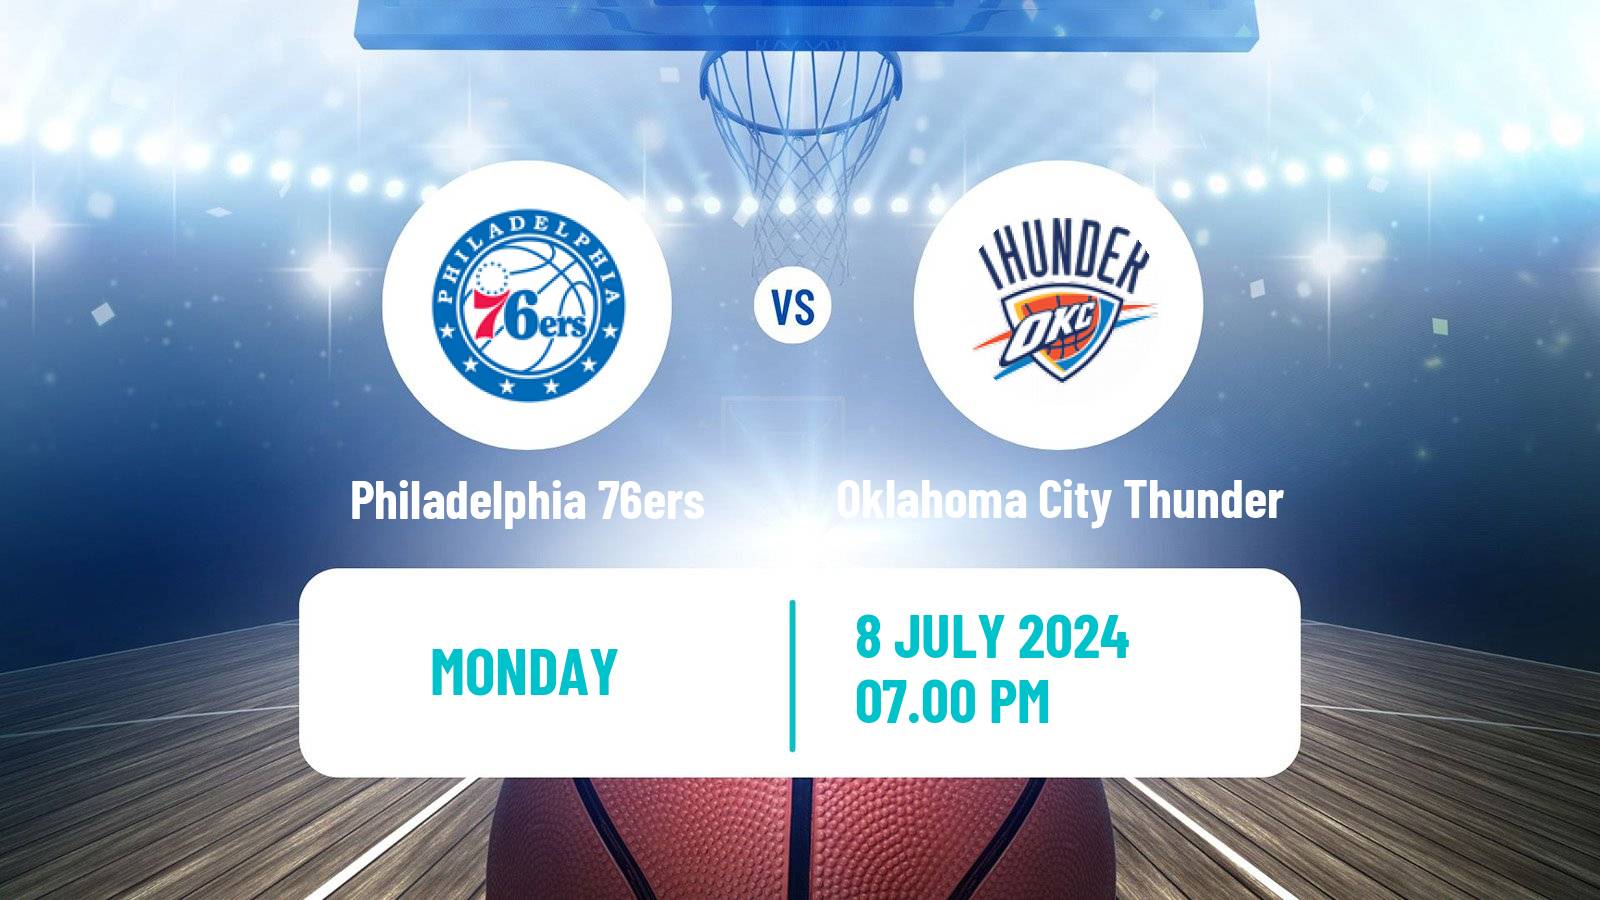 Basketball NBA Salt Lake City Summer League Philadelphia 76ers - Oklahoma City Thunder